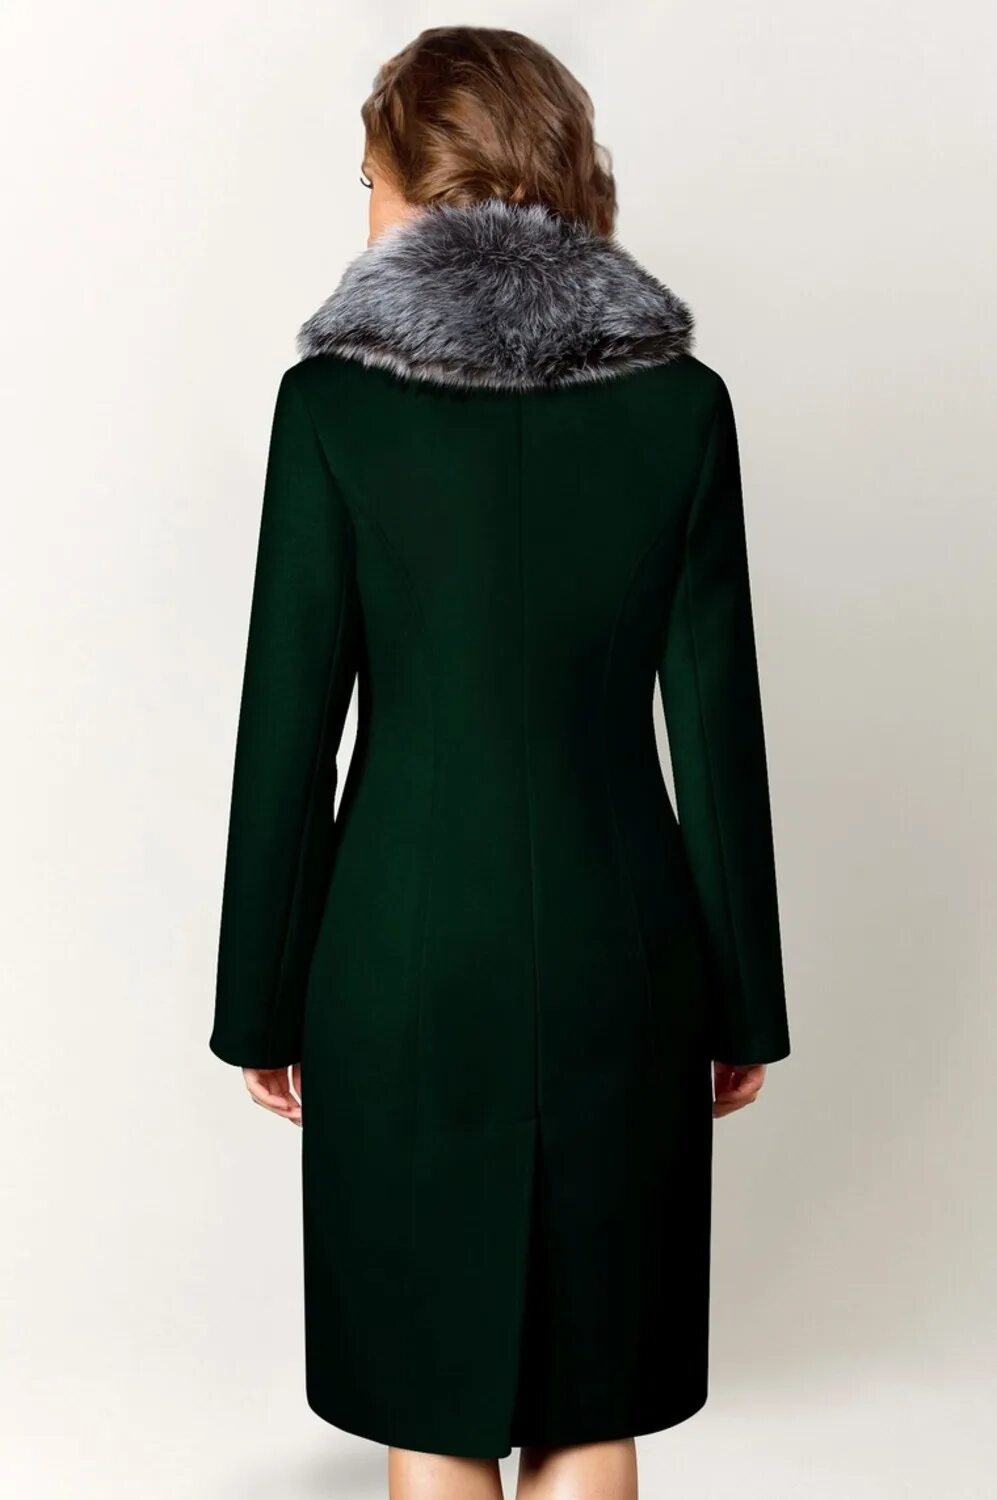 Аэтг пальто. Пальто Авалон изумрудный. Пальто аэтг женское. Пальто Avalon зеленое. Зеленое зимнее пальто.